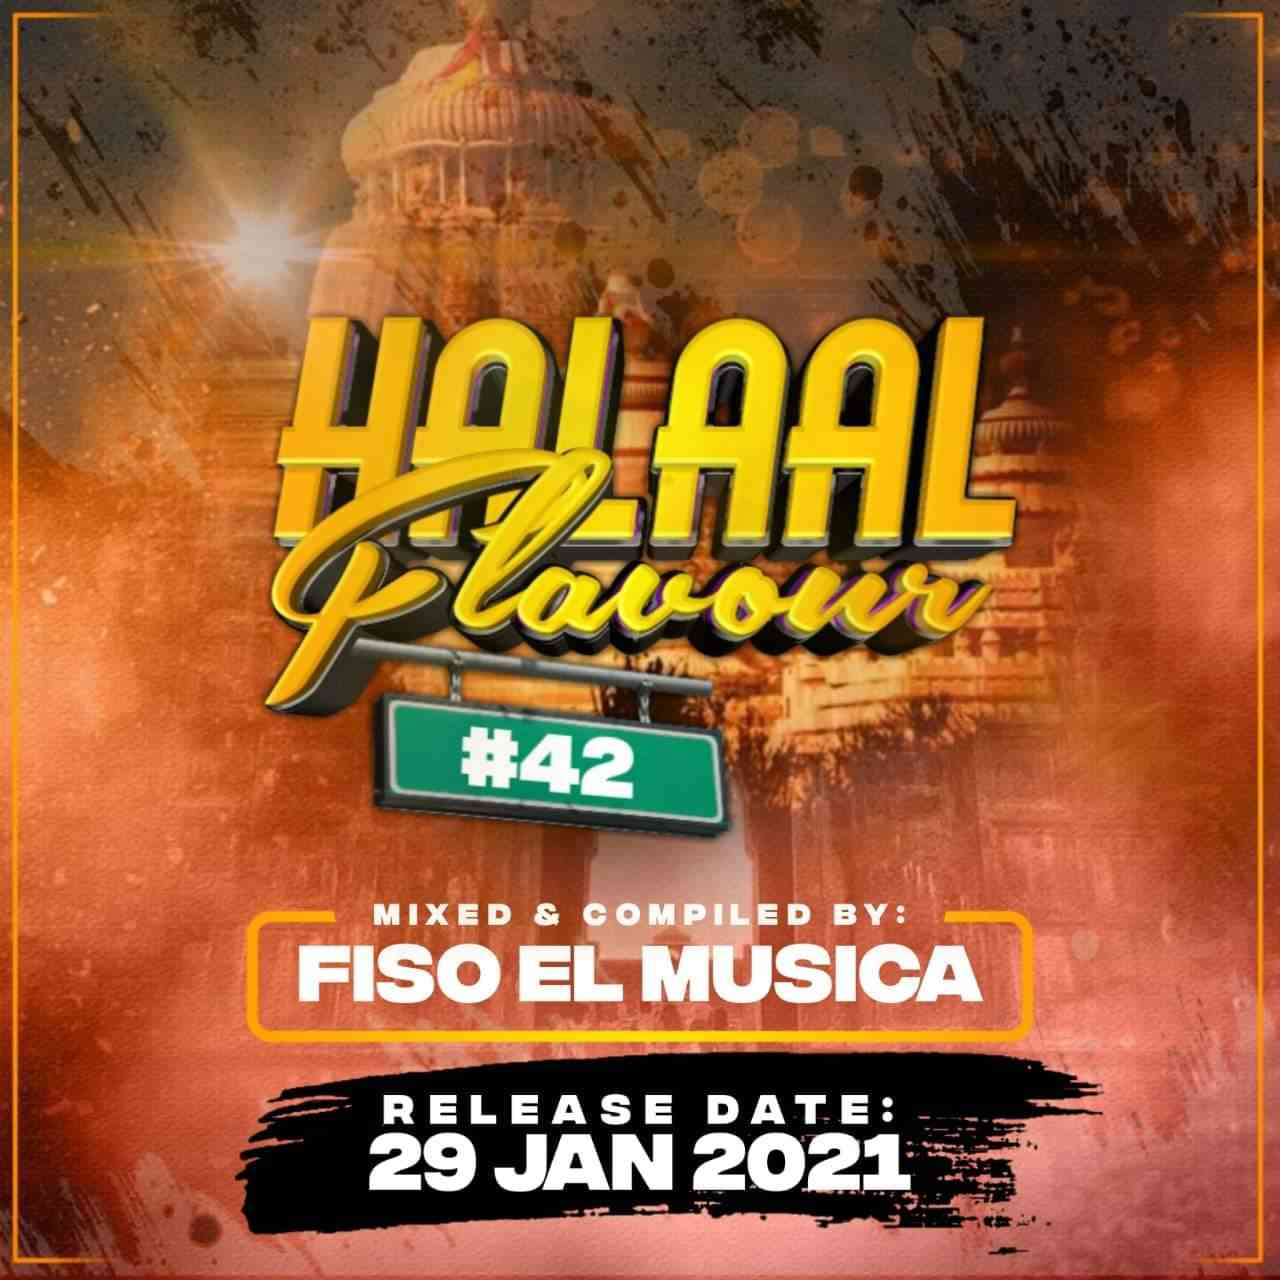 Fiso El Musica Halaal Flavour #042 Mix